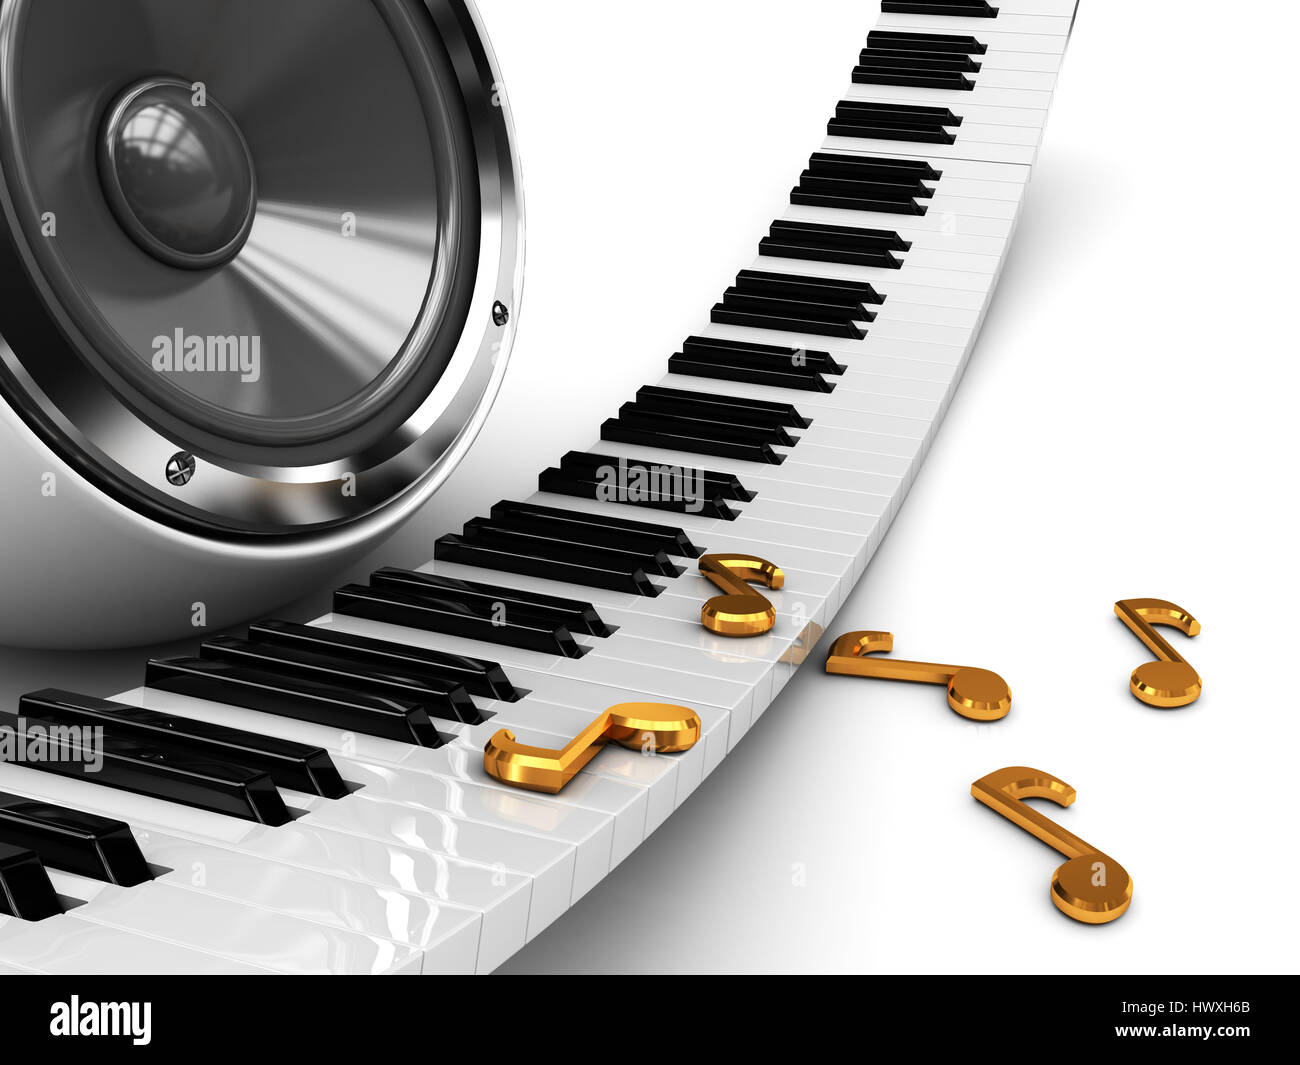 Phông nền âm nhạc trừu tượng 3D với đàn piano và âm thanh: Tận hưởng không gian âm nhạc tràn đầy đam mê với phông nền âm nhạc trừu tượng 3D cùng với tiếng đàn piano đầy cảm xúc và hấp dẫn. Chúng tôi chắc chắn rằng bạn sẽ được trải nghiệm những điều tuyệt vời nhất với không gian âm nhạc của chúng tôi. 